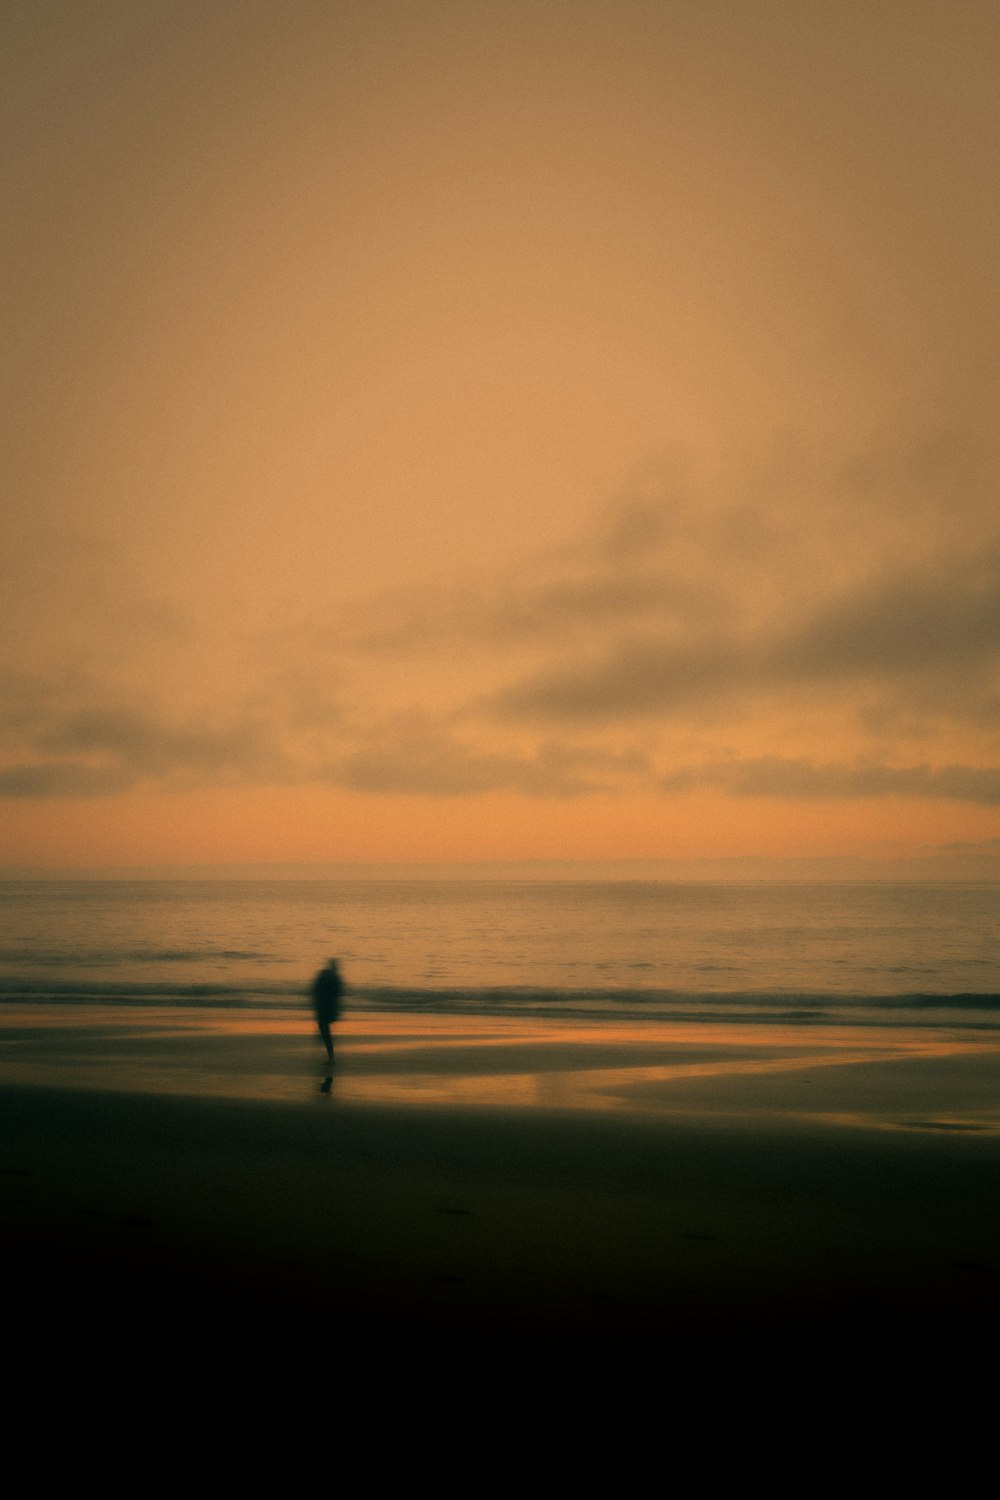 Una persona caminando en una playa al atardecer